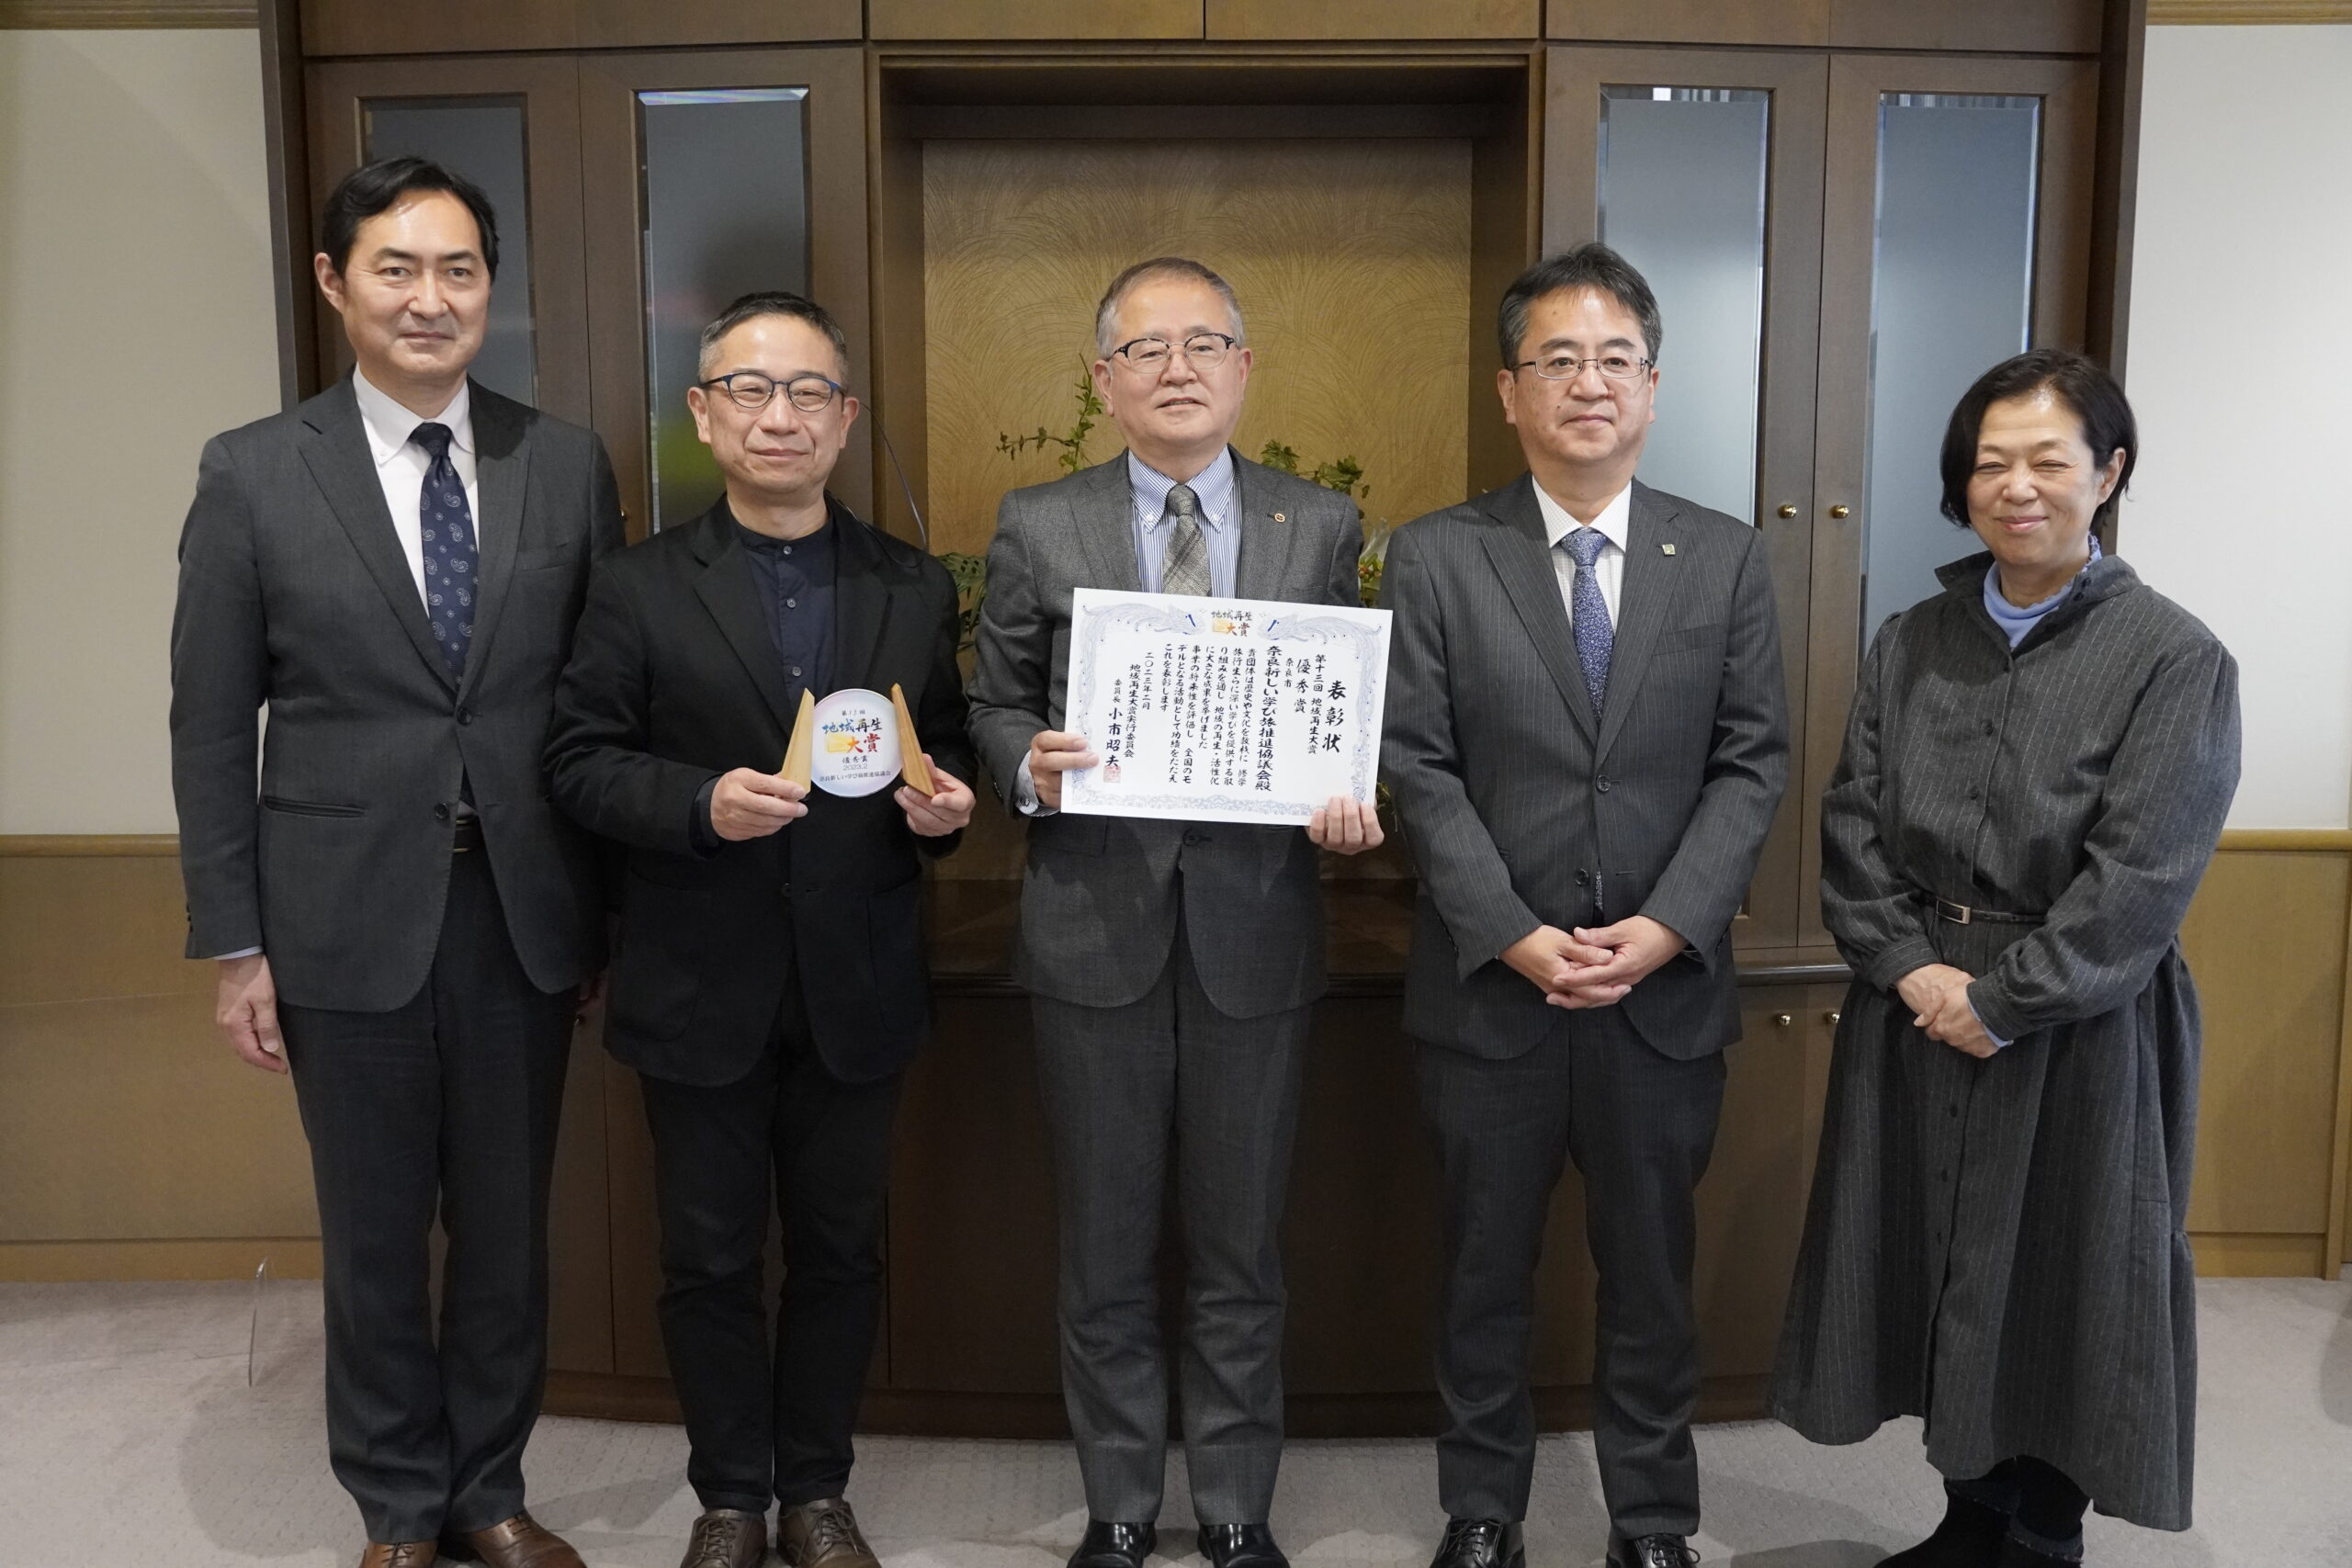 【お知らせ】奈良SDGs学び旅が「地域再生大賞」優秀賞を受賞しました。